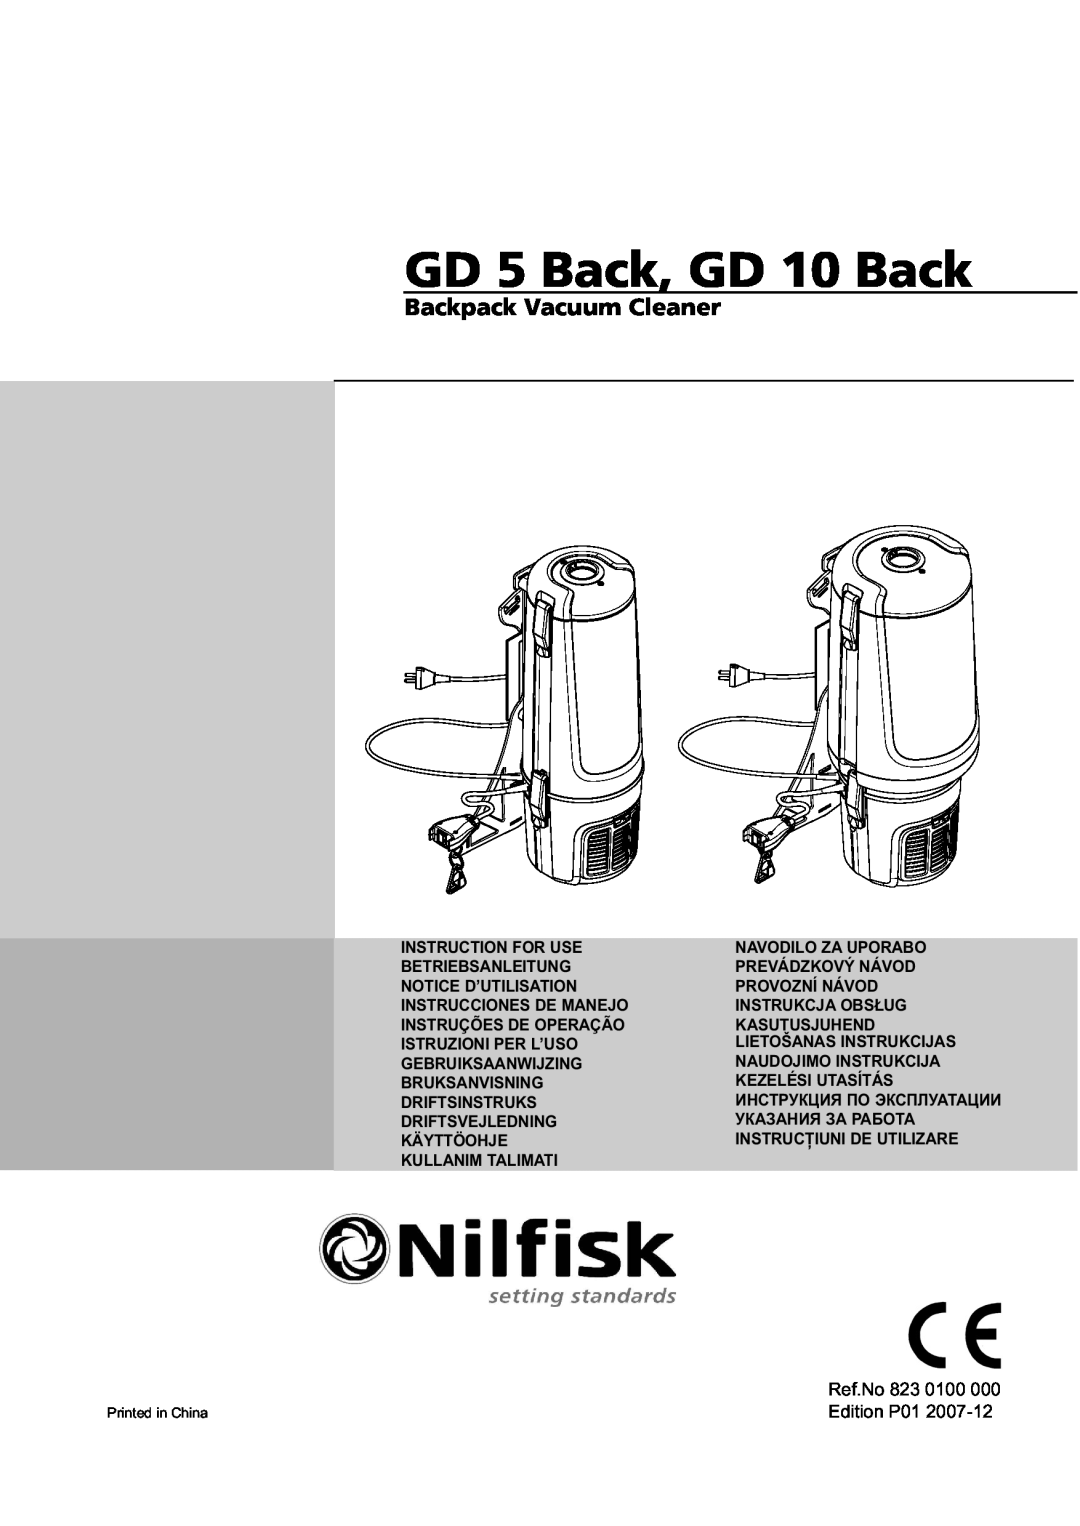 Nilfisk-ALTO manual GD 5 Back, GD 10 Back, Backpack Vacuum Cleaner 